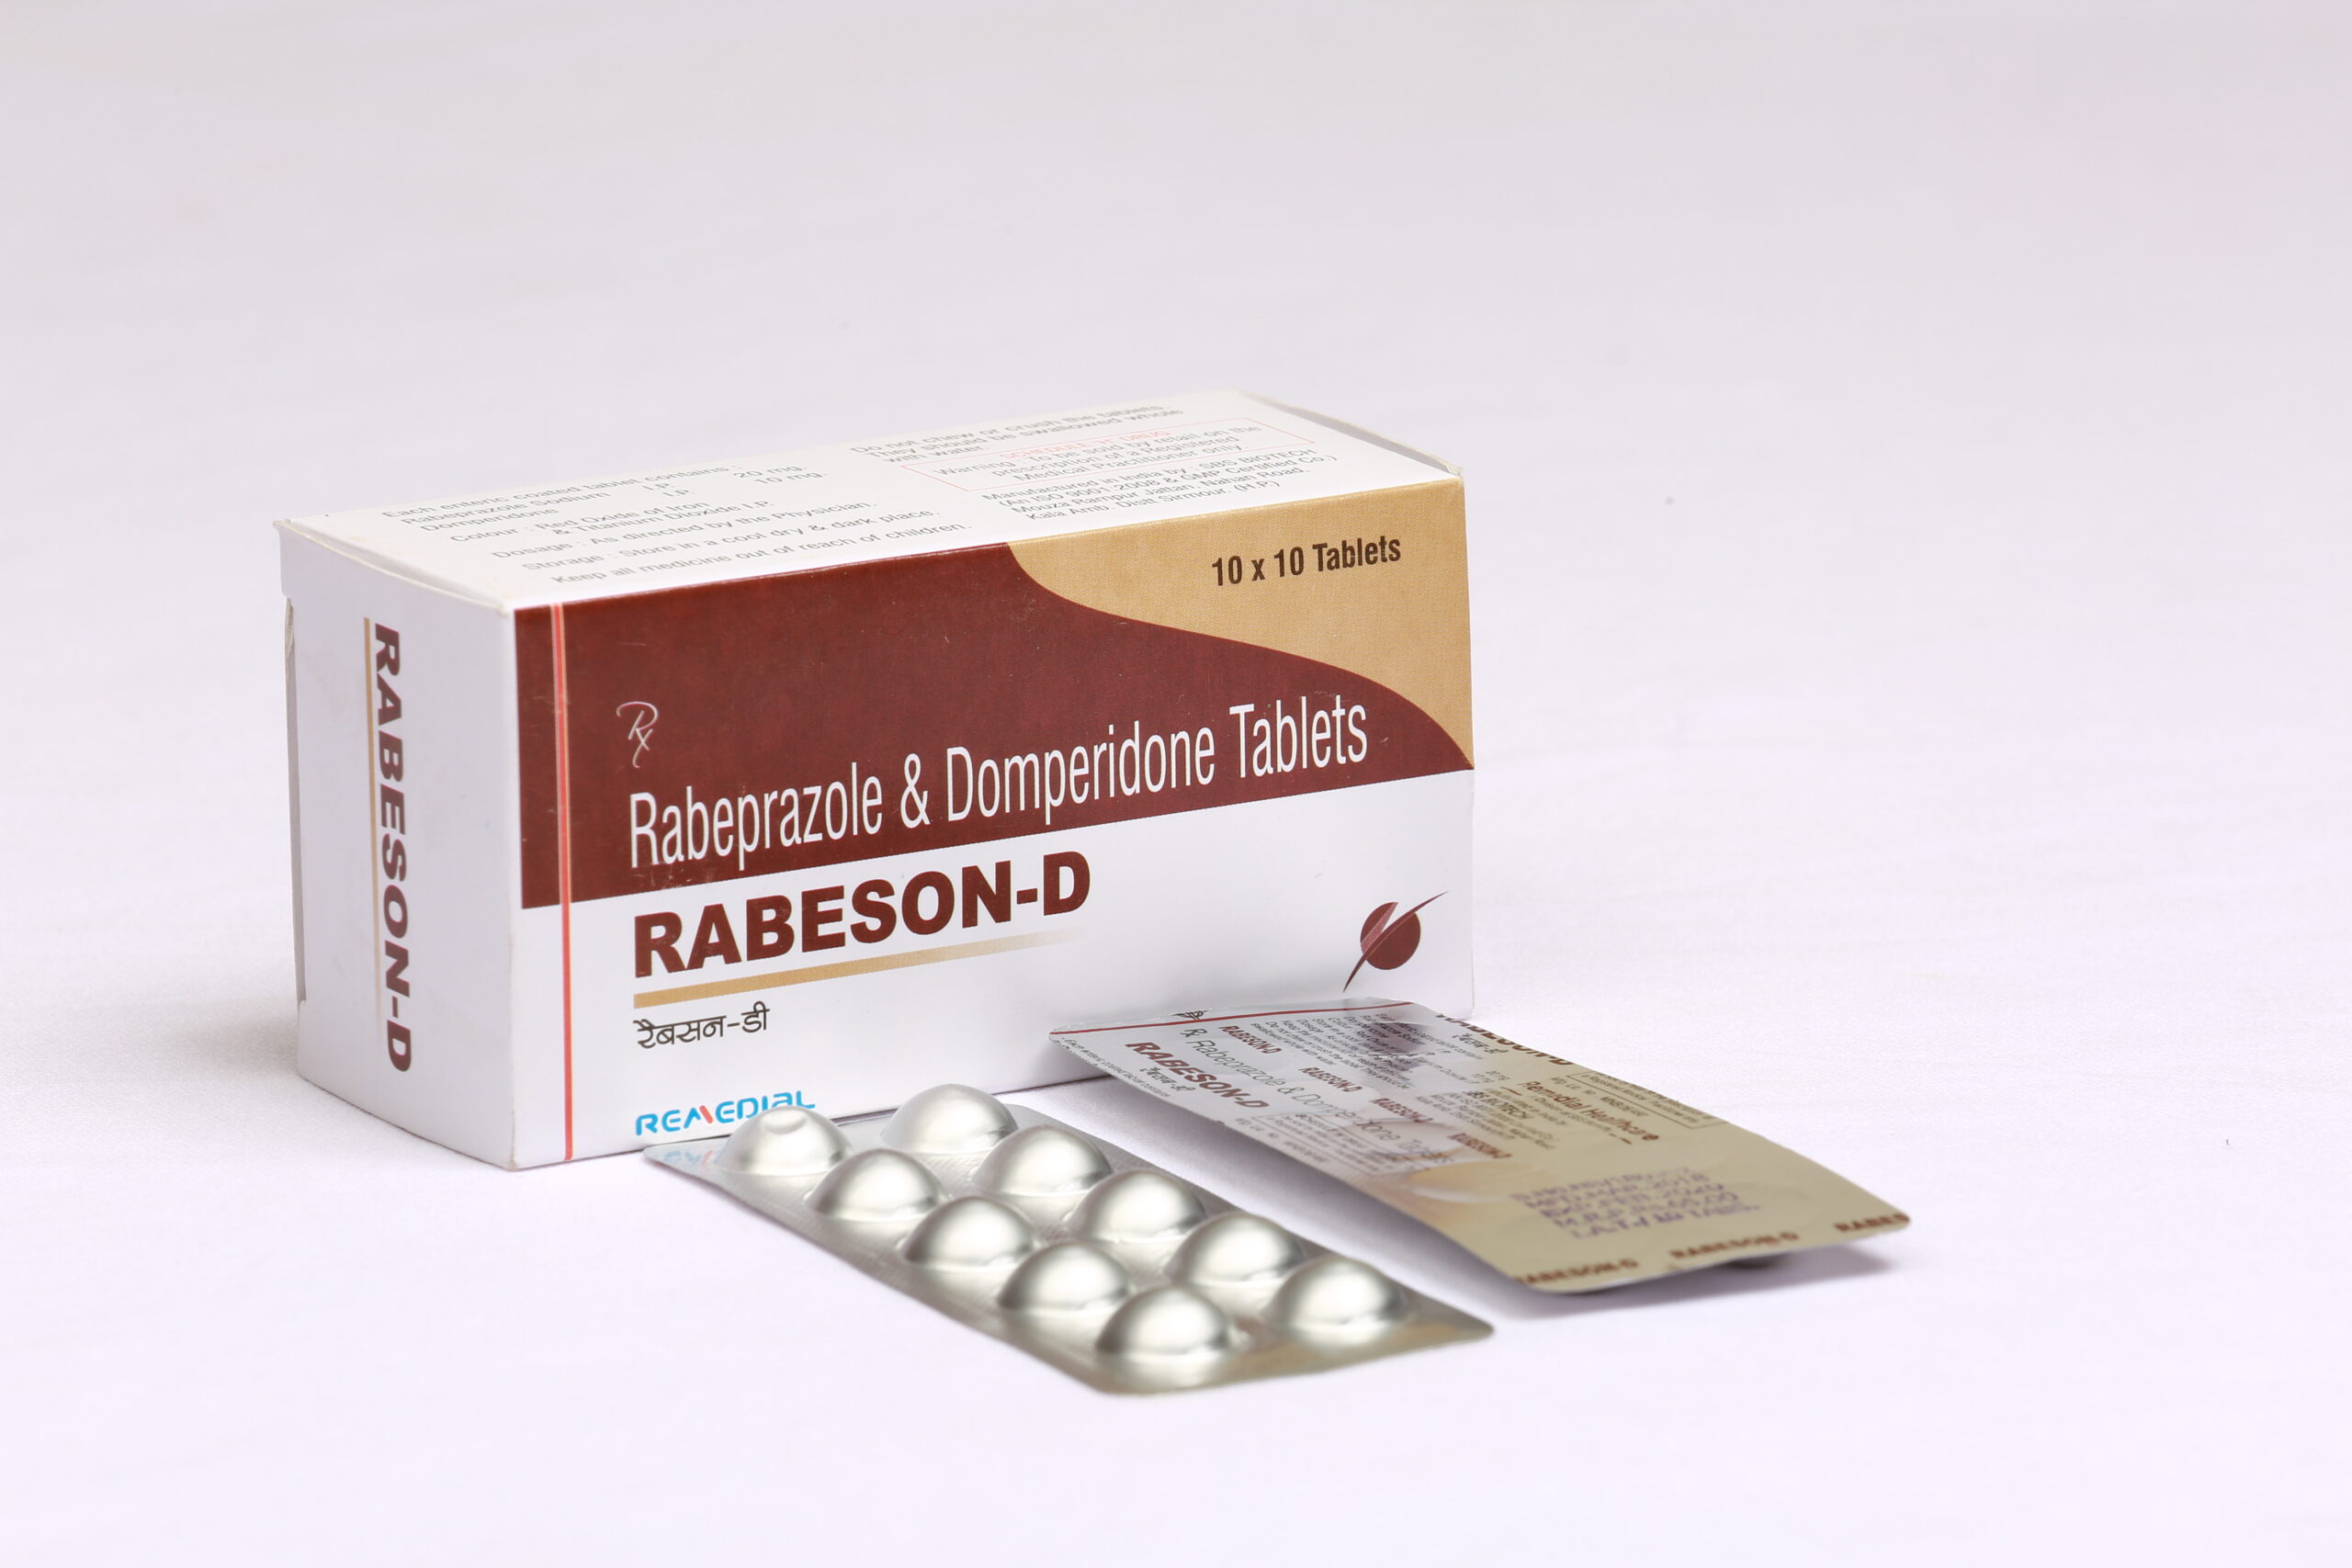 RABESON-D (Rabeprazole Sodium + Domperidone 10mg)